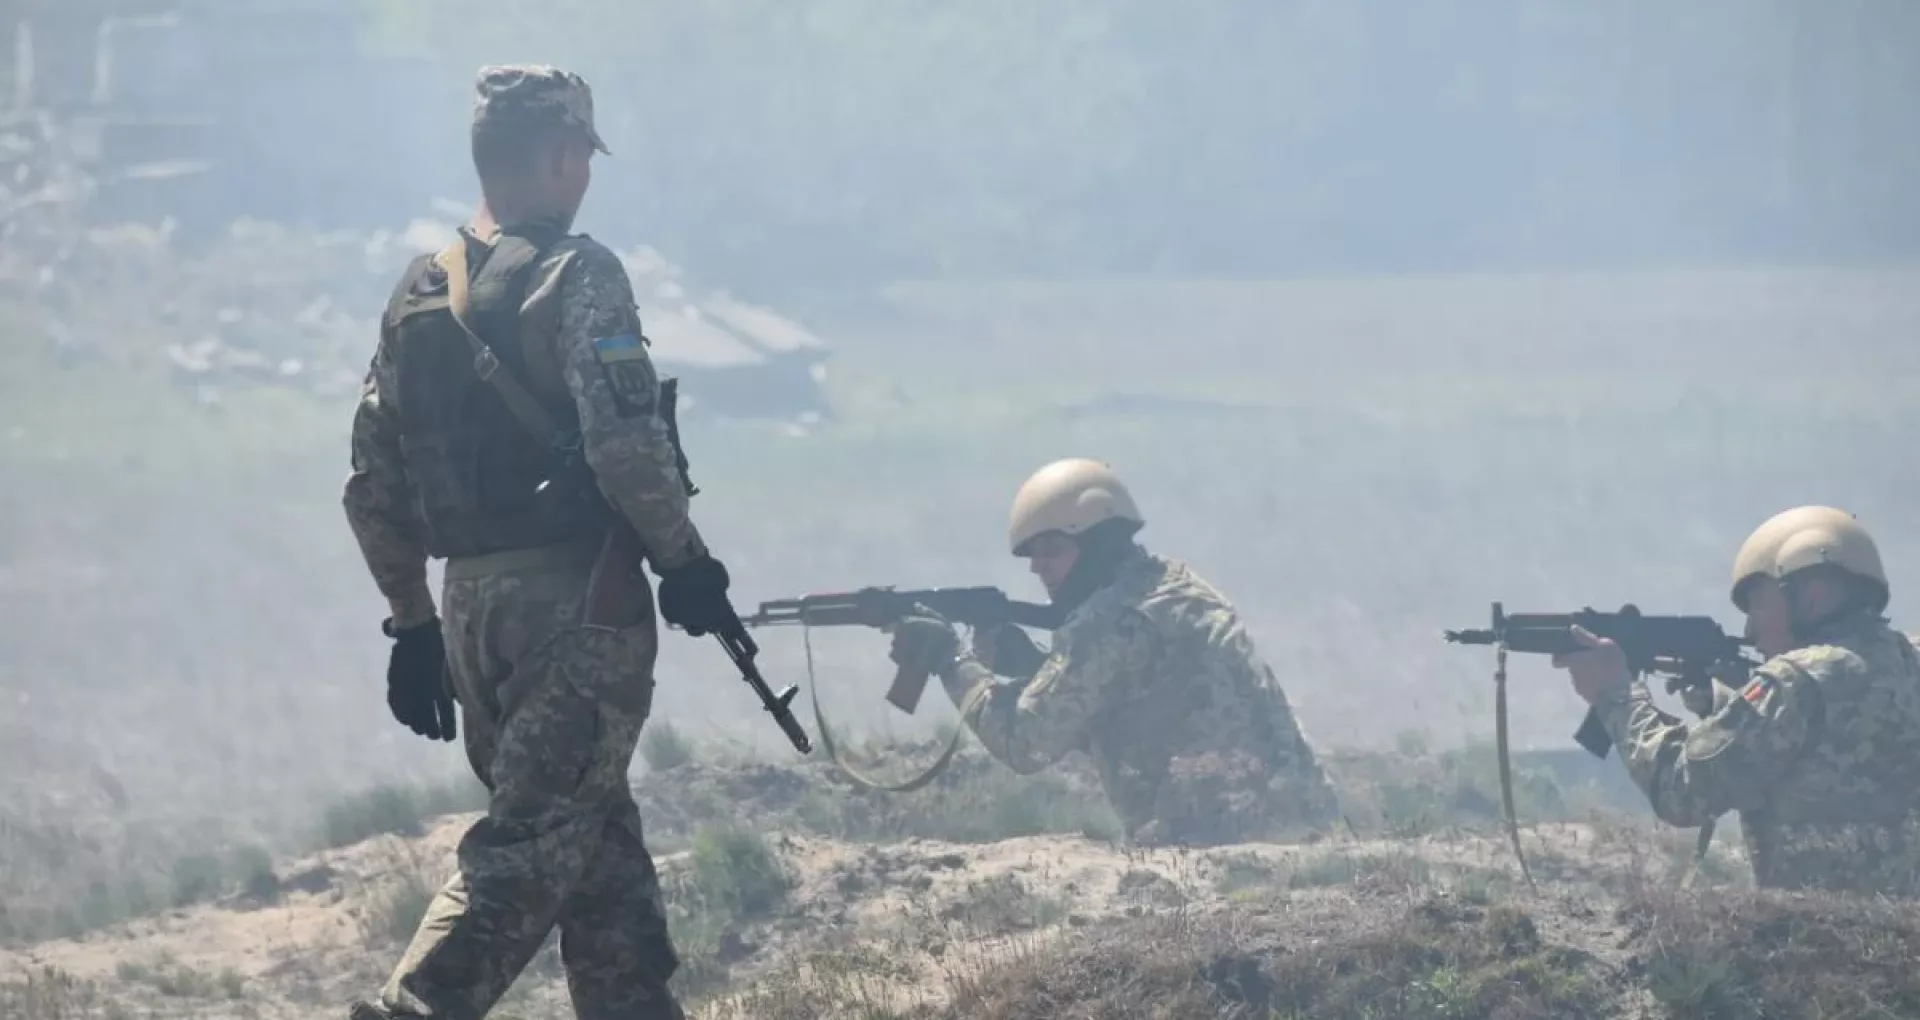 LIVE TEXT/ Război în Ucraina, ziua 110. Amnesty International susține că Rusia a bombardat orașul Harkov cu muniții cu dispersie. Autoritățile ucrainene anunță morți și răniți în urma atacurilor rusești din regiunea Donețk